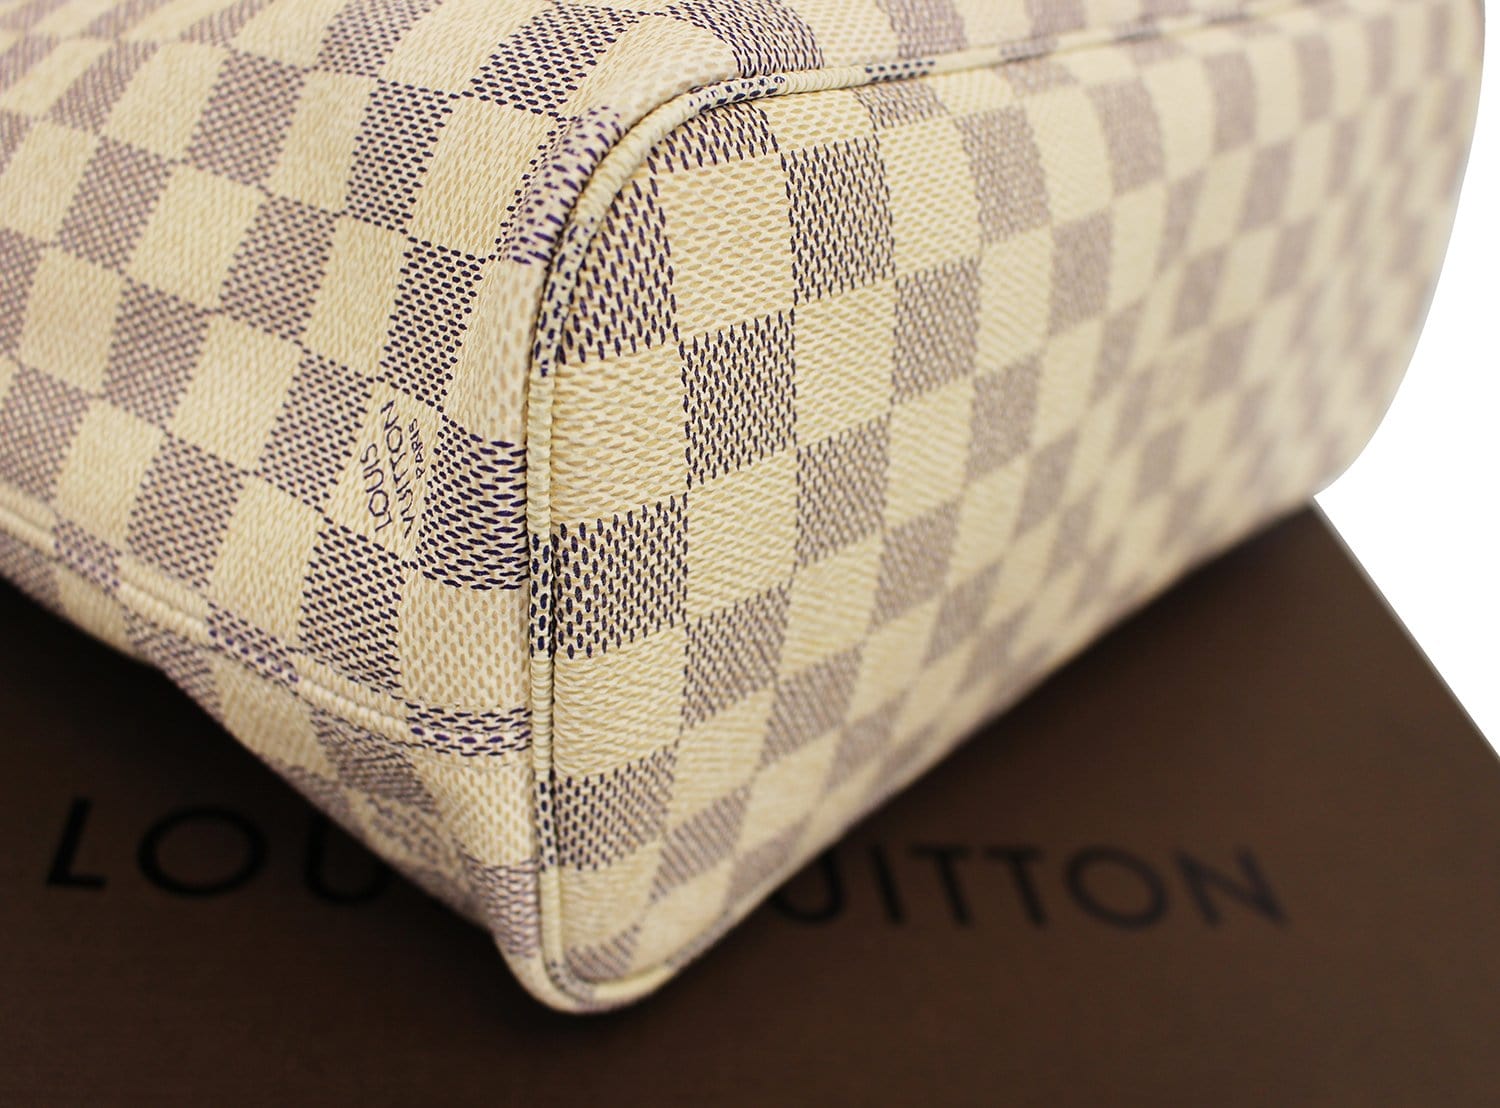 Louis Vuitton Neverfull PM Damier Azur Tote Shoulder Bag